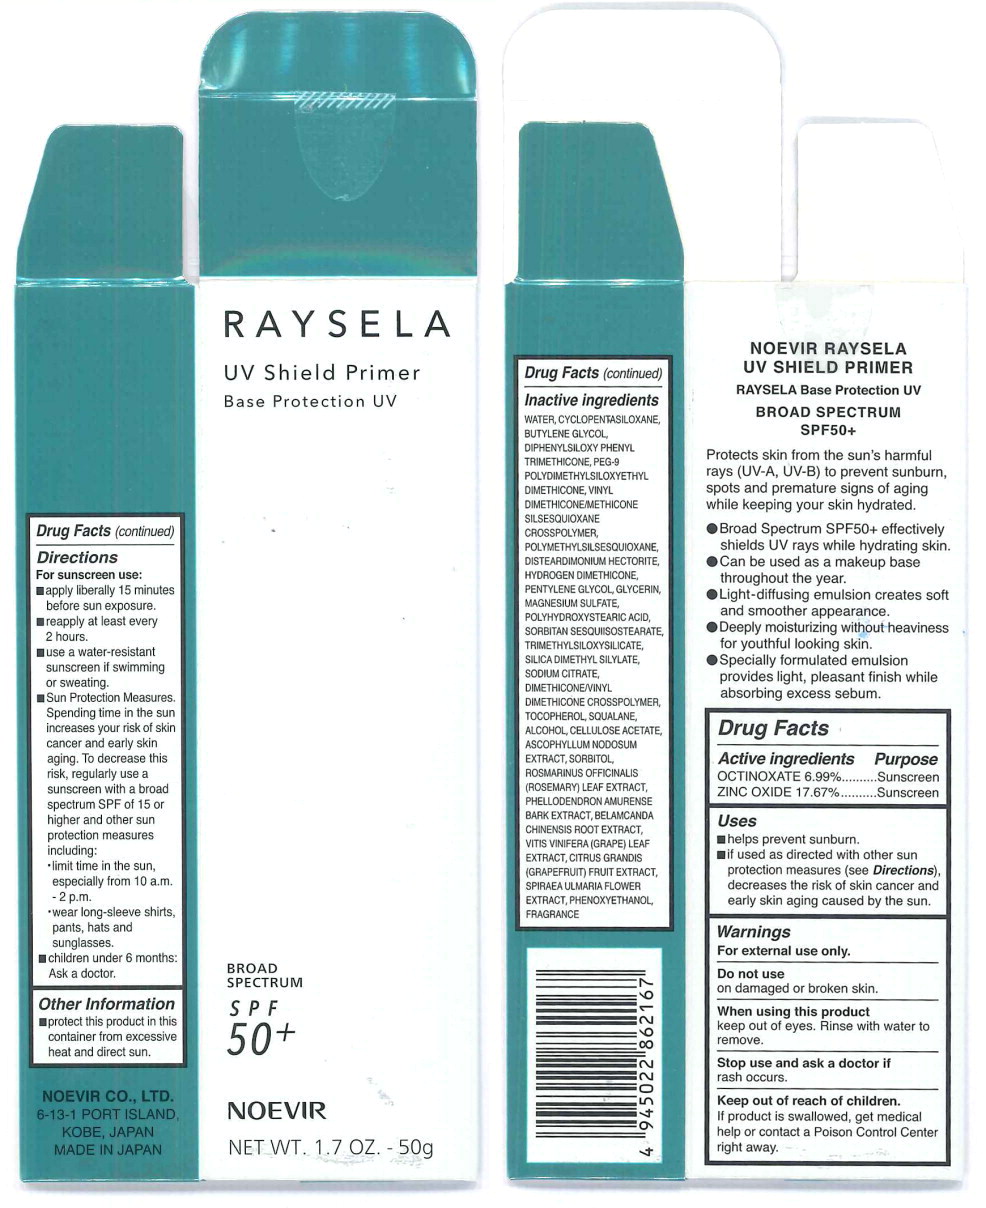 Principal Display Panel - Raysela UV Shield Primer Label
